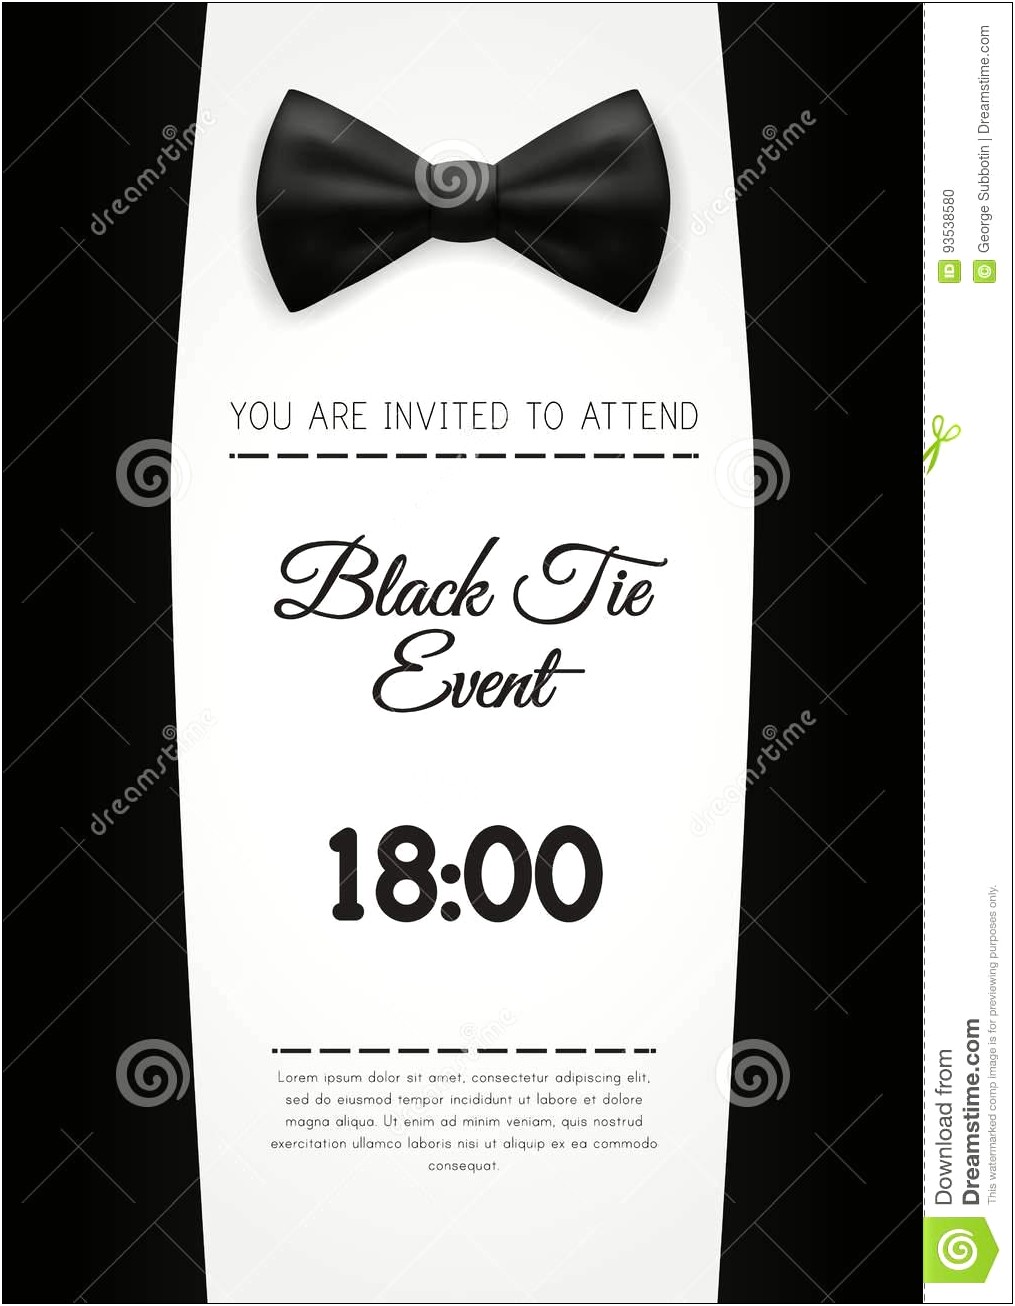 Black Tie Event Invitation Template Free